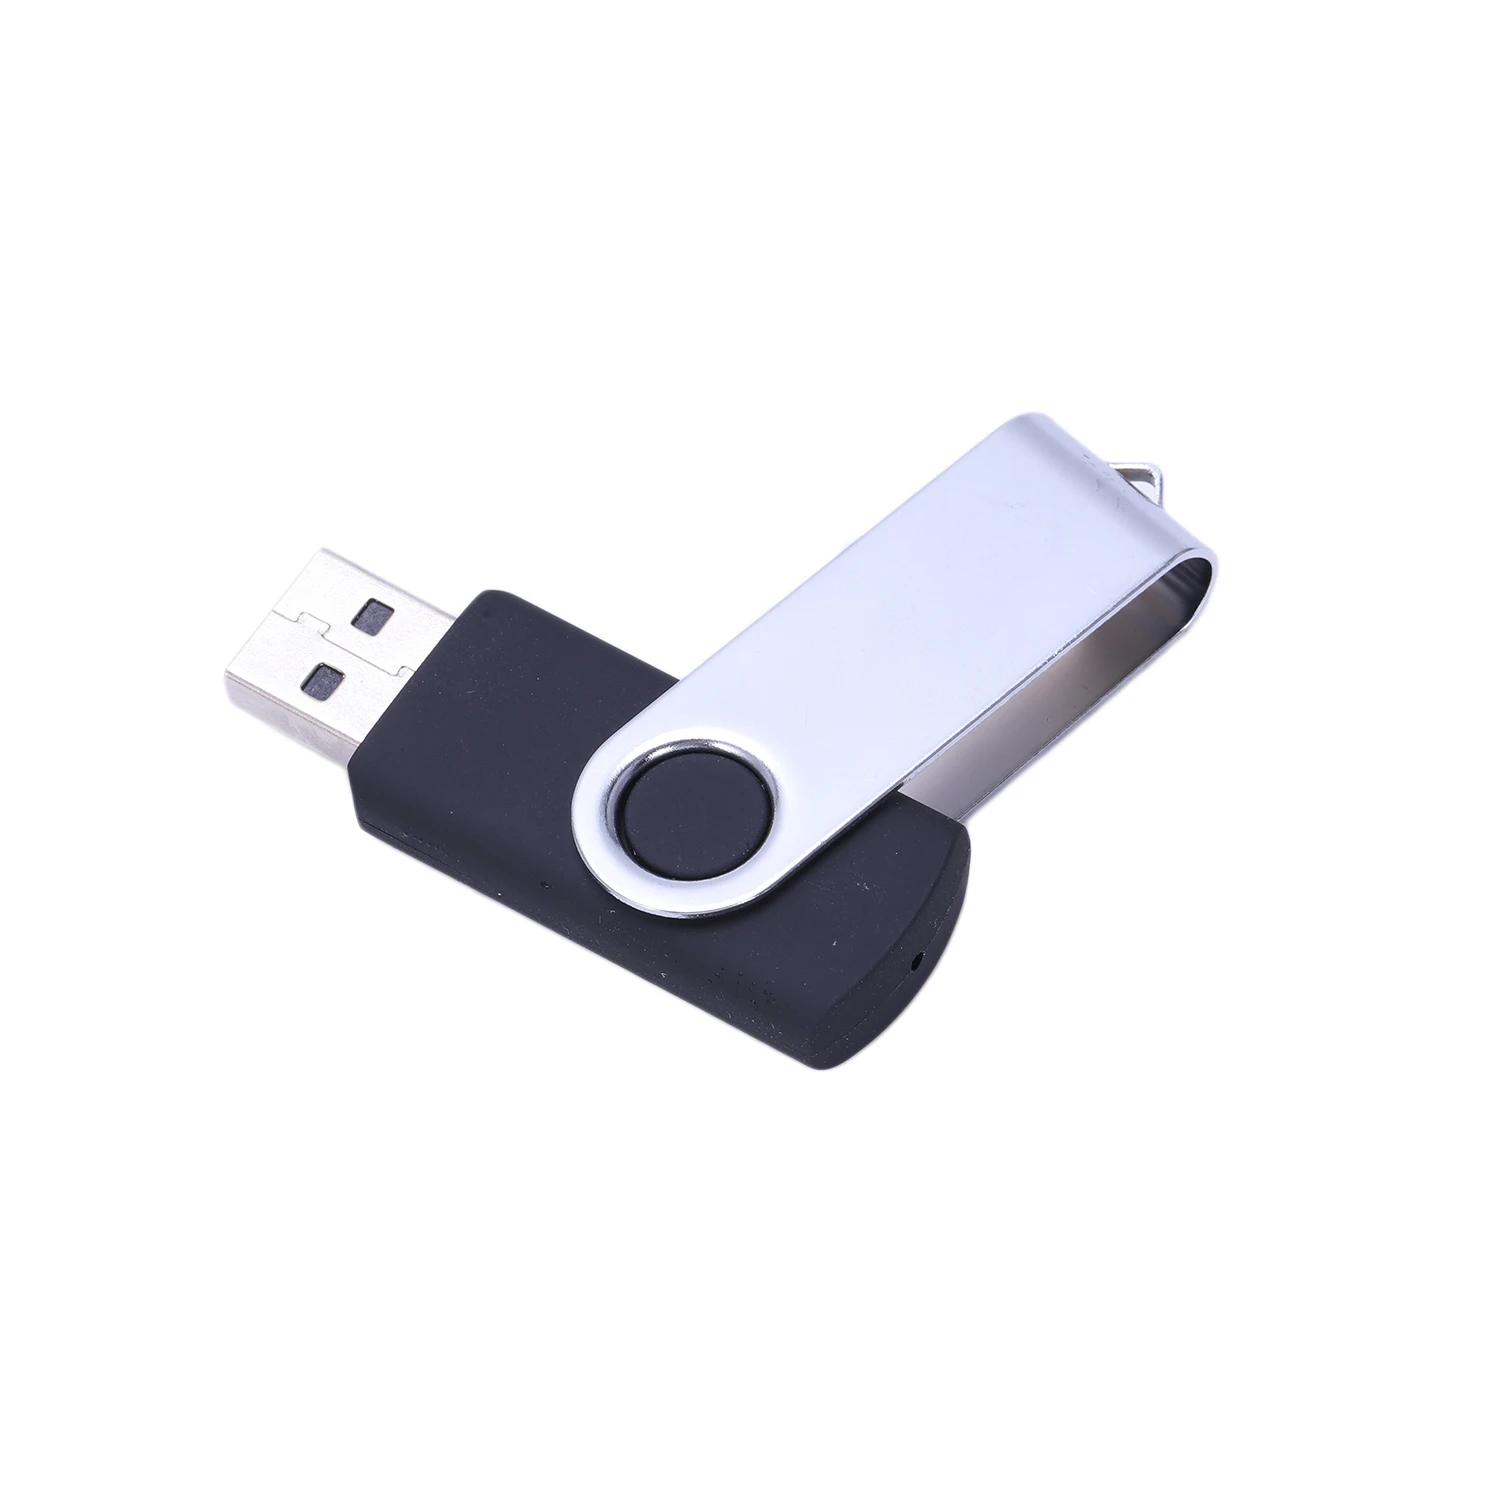 Поворотный usb-накопитель флэш-карта памяти, носитель 2,0 хранения Thumb U диск